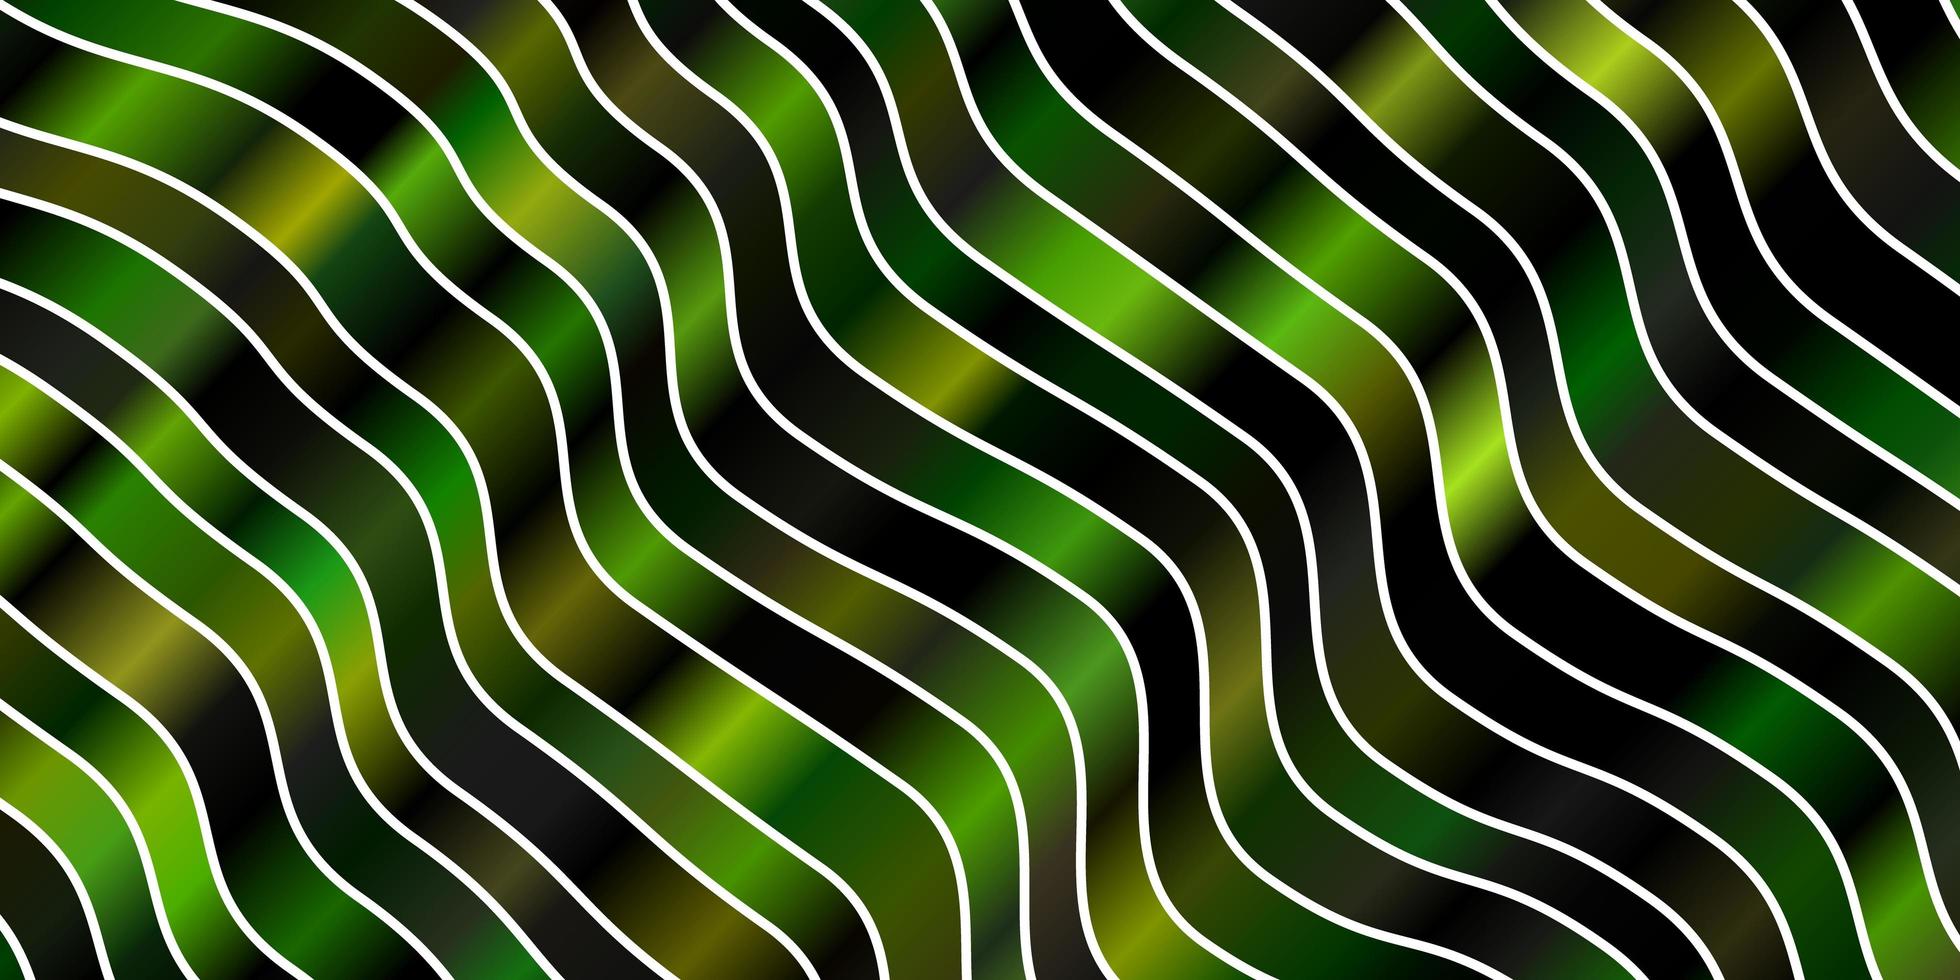 pano de fundo vector verde e amarelo escuro com linhas dobradas.